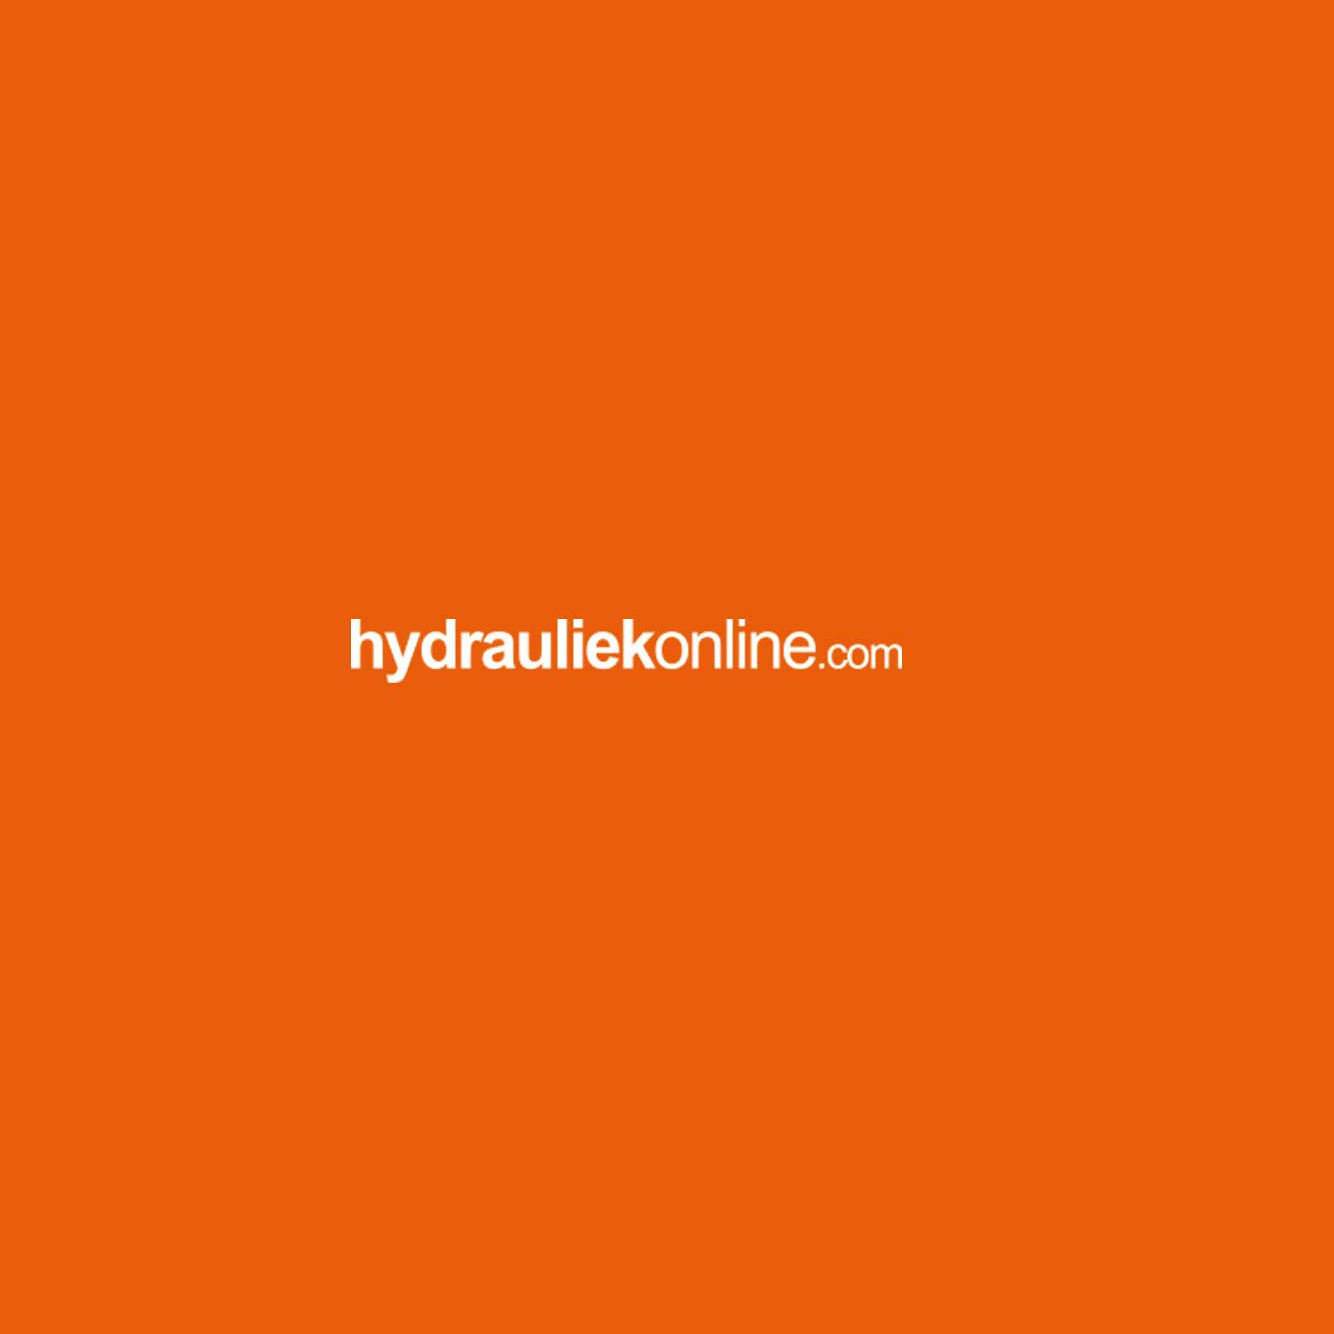 hydrauliek-online-528.jpg